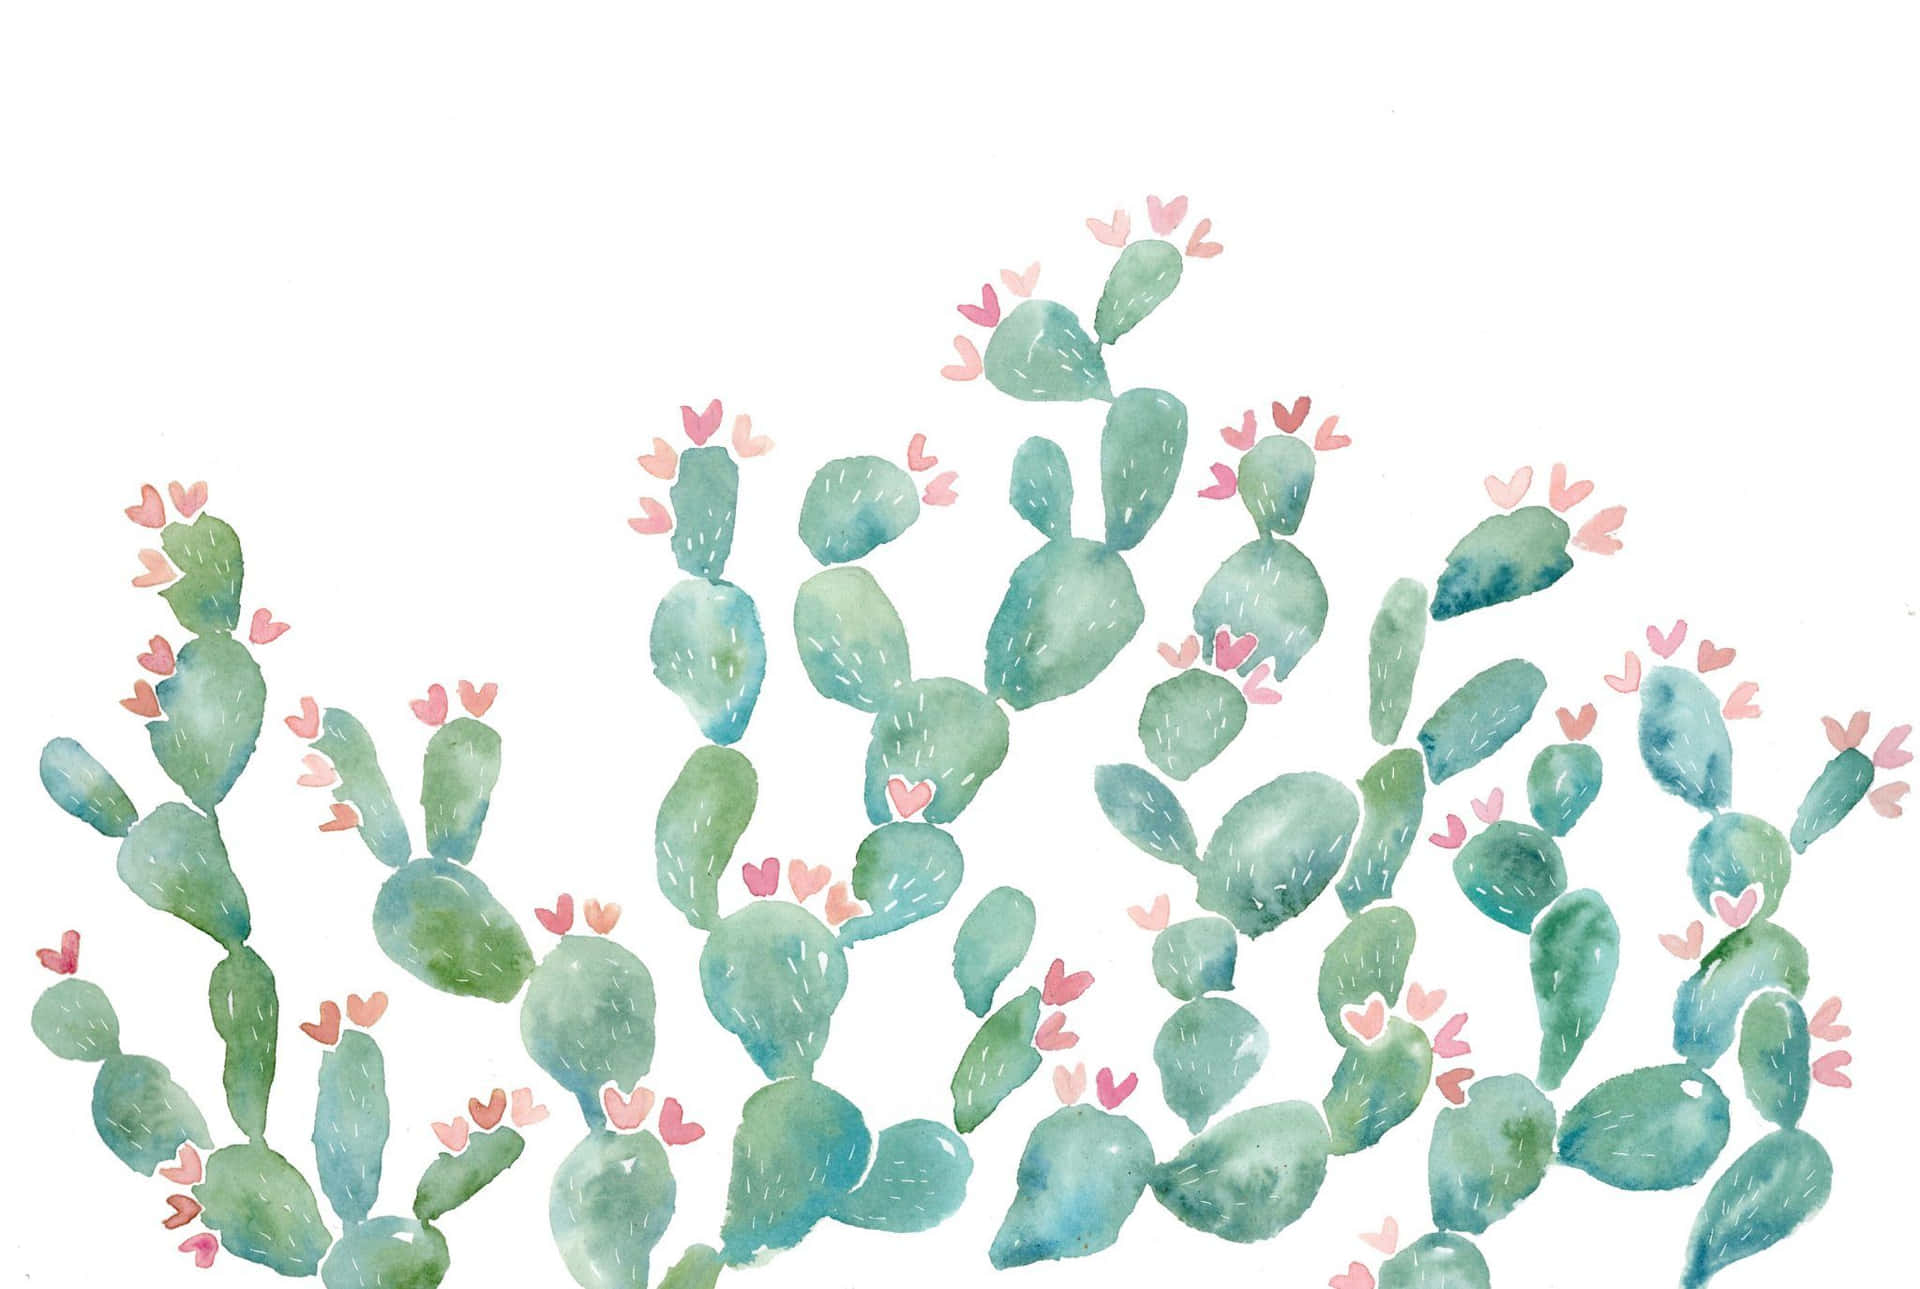 Imagende Pintura De Un Cactus Con Orejas De Conejo.